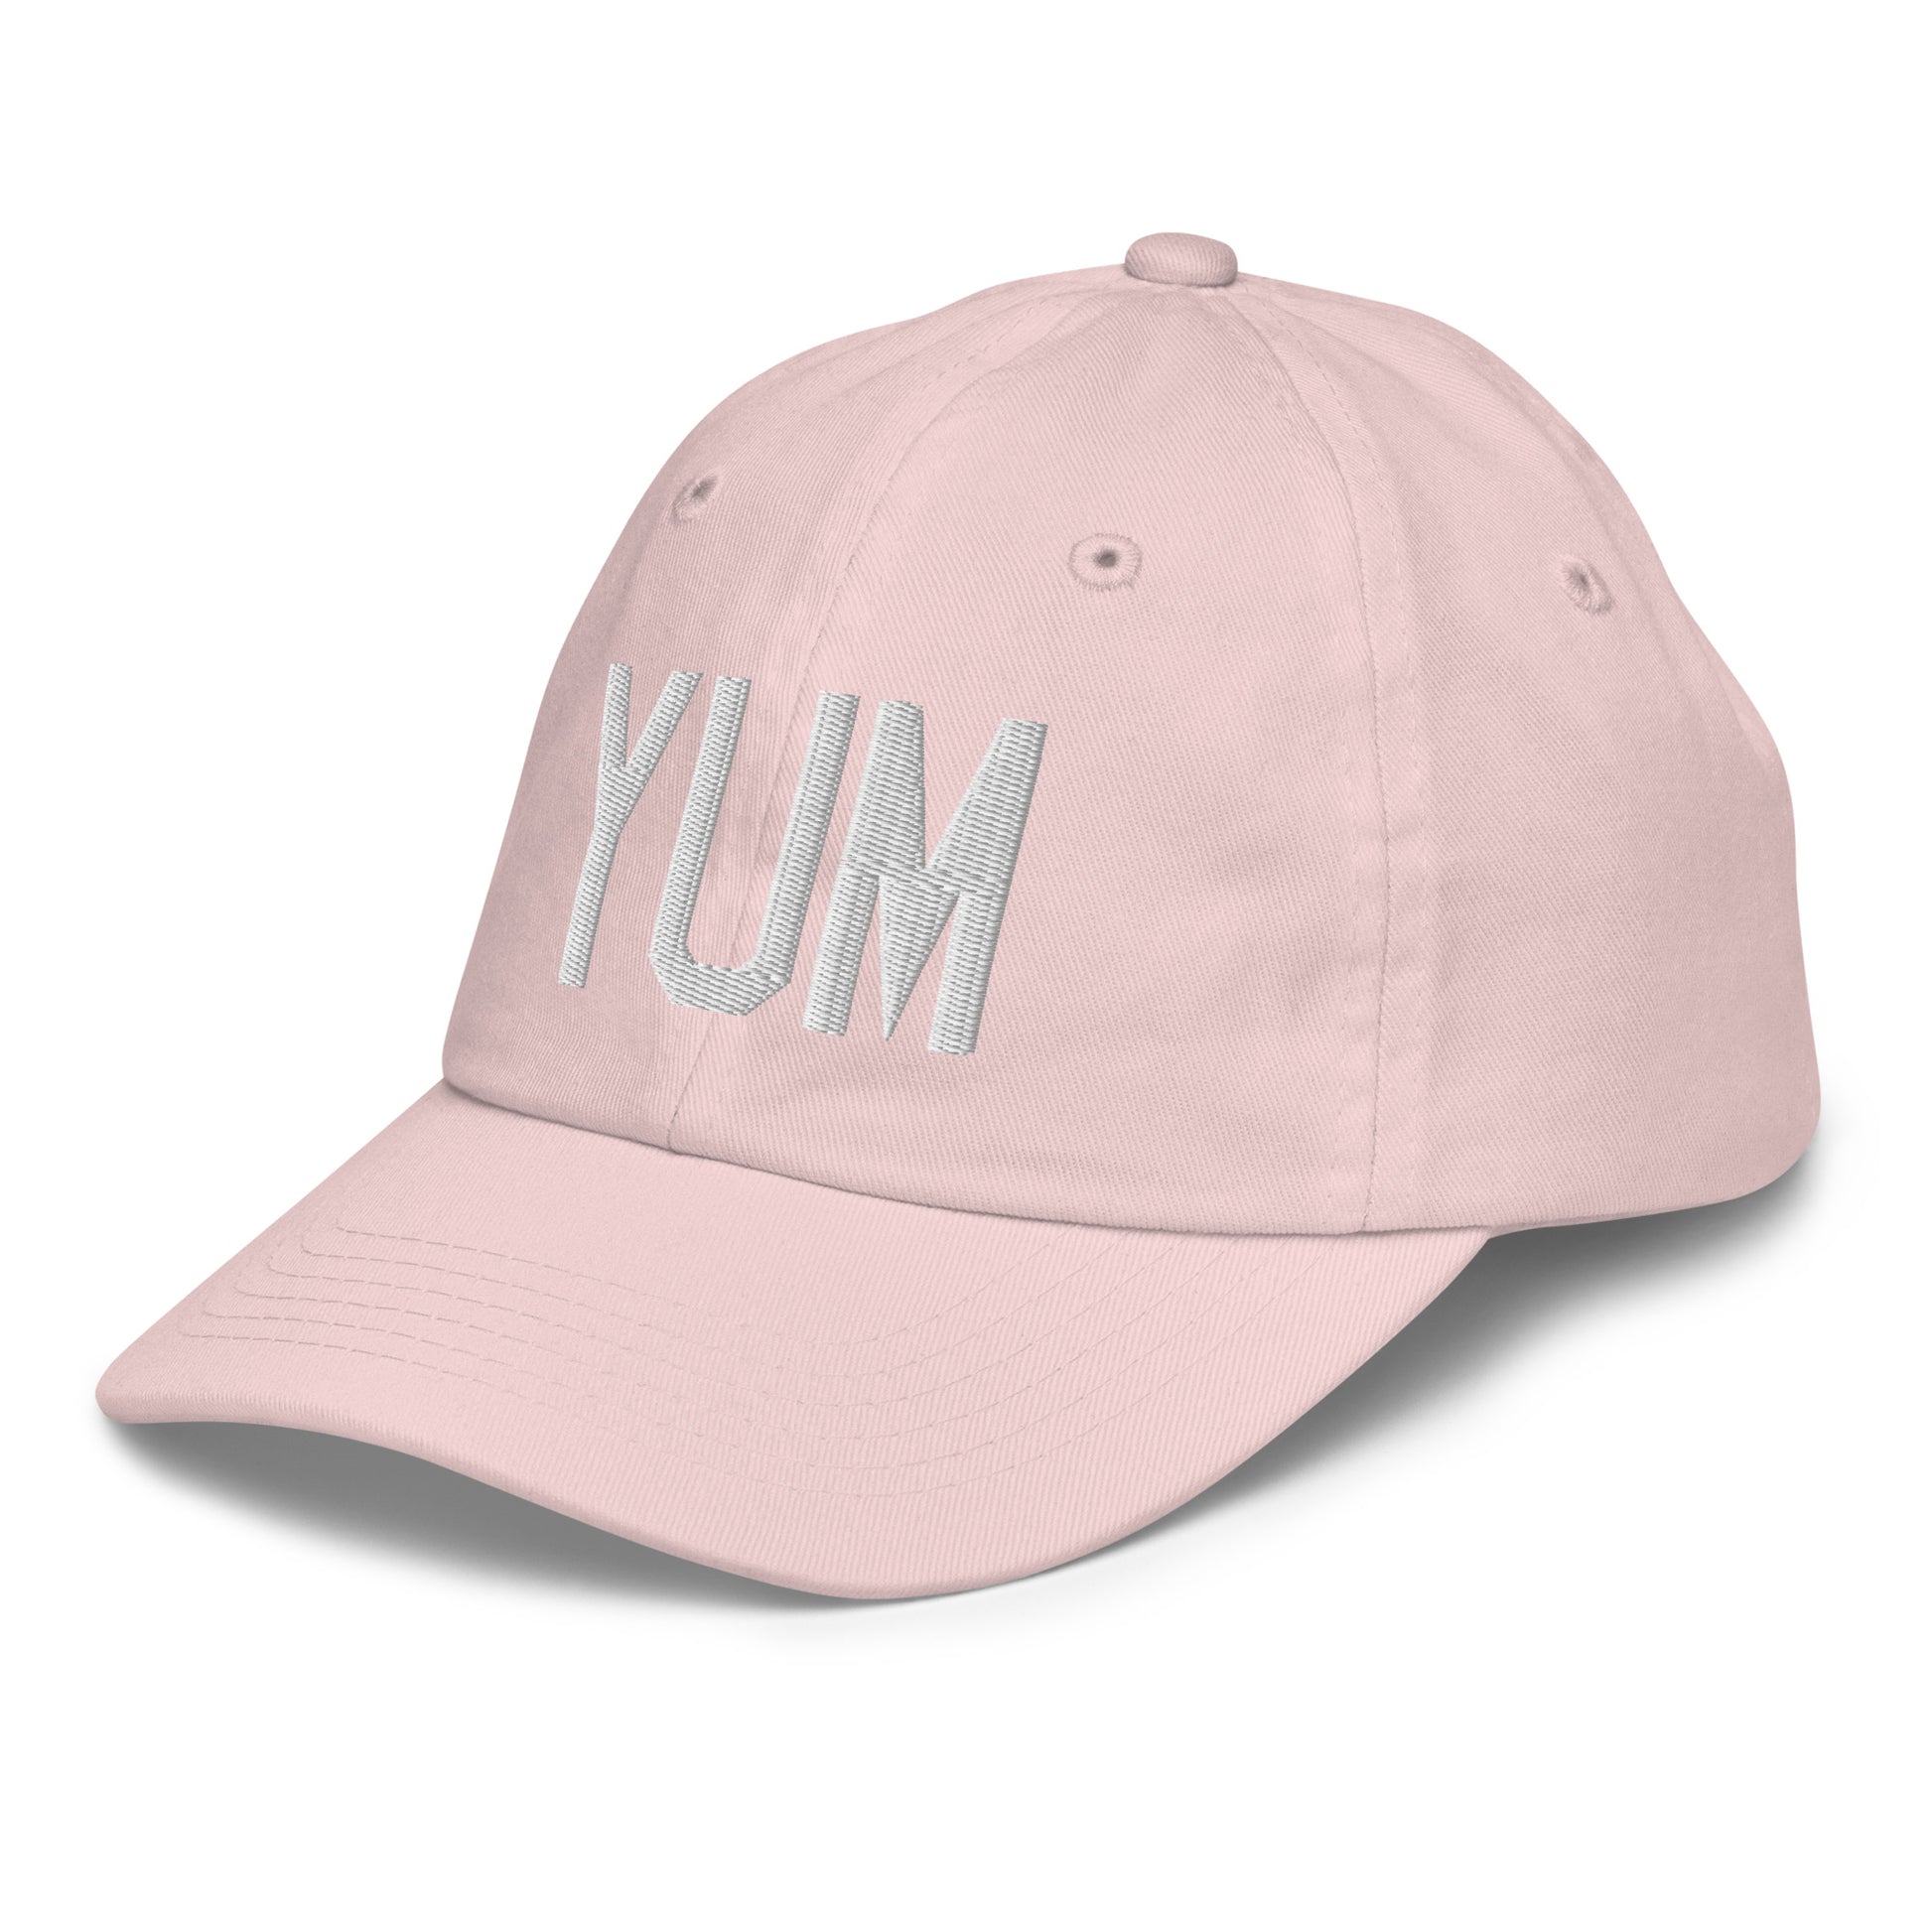 Airport Code Kid's Baseball Cap - White • YUM Yuma • YHM Designs - Image 33